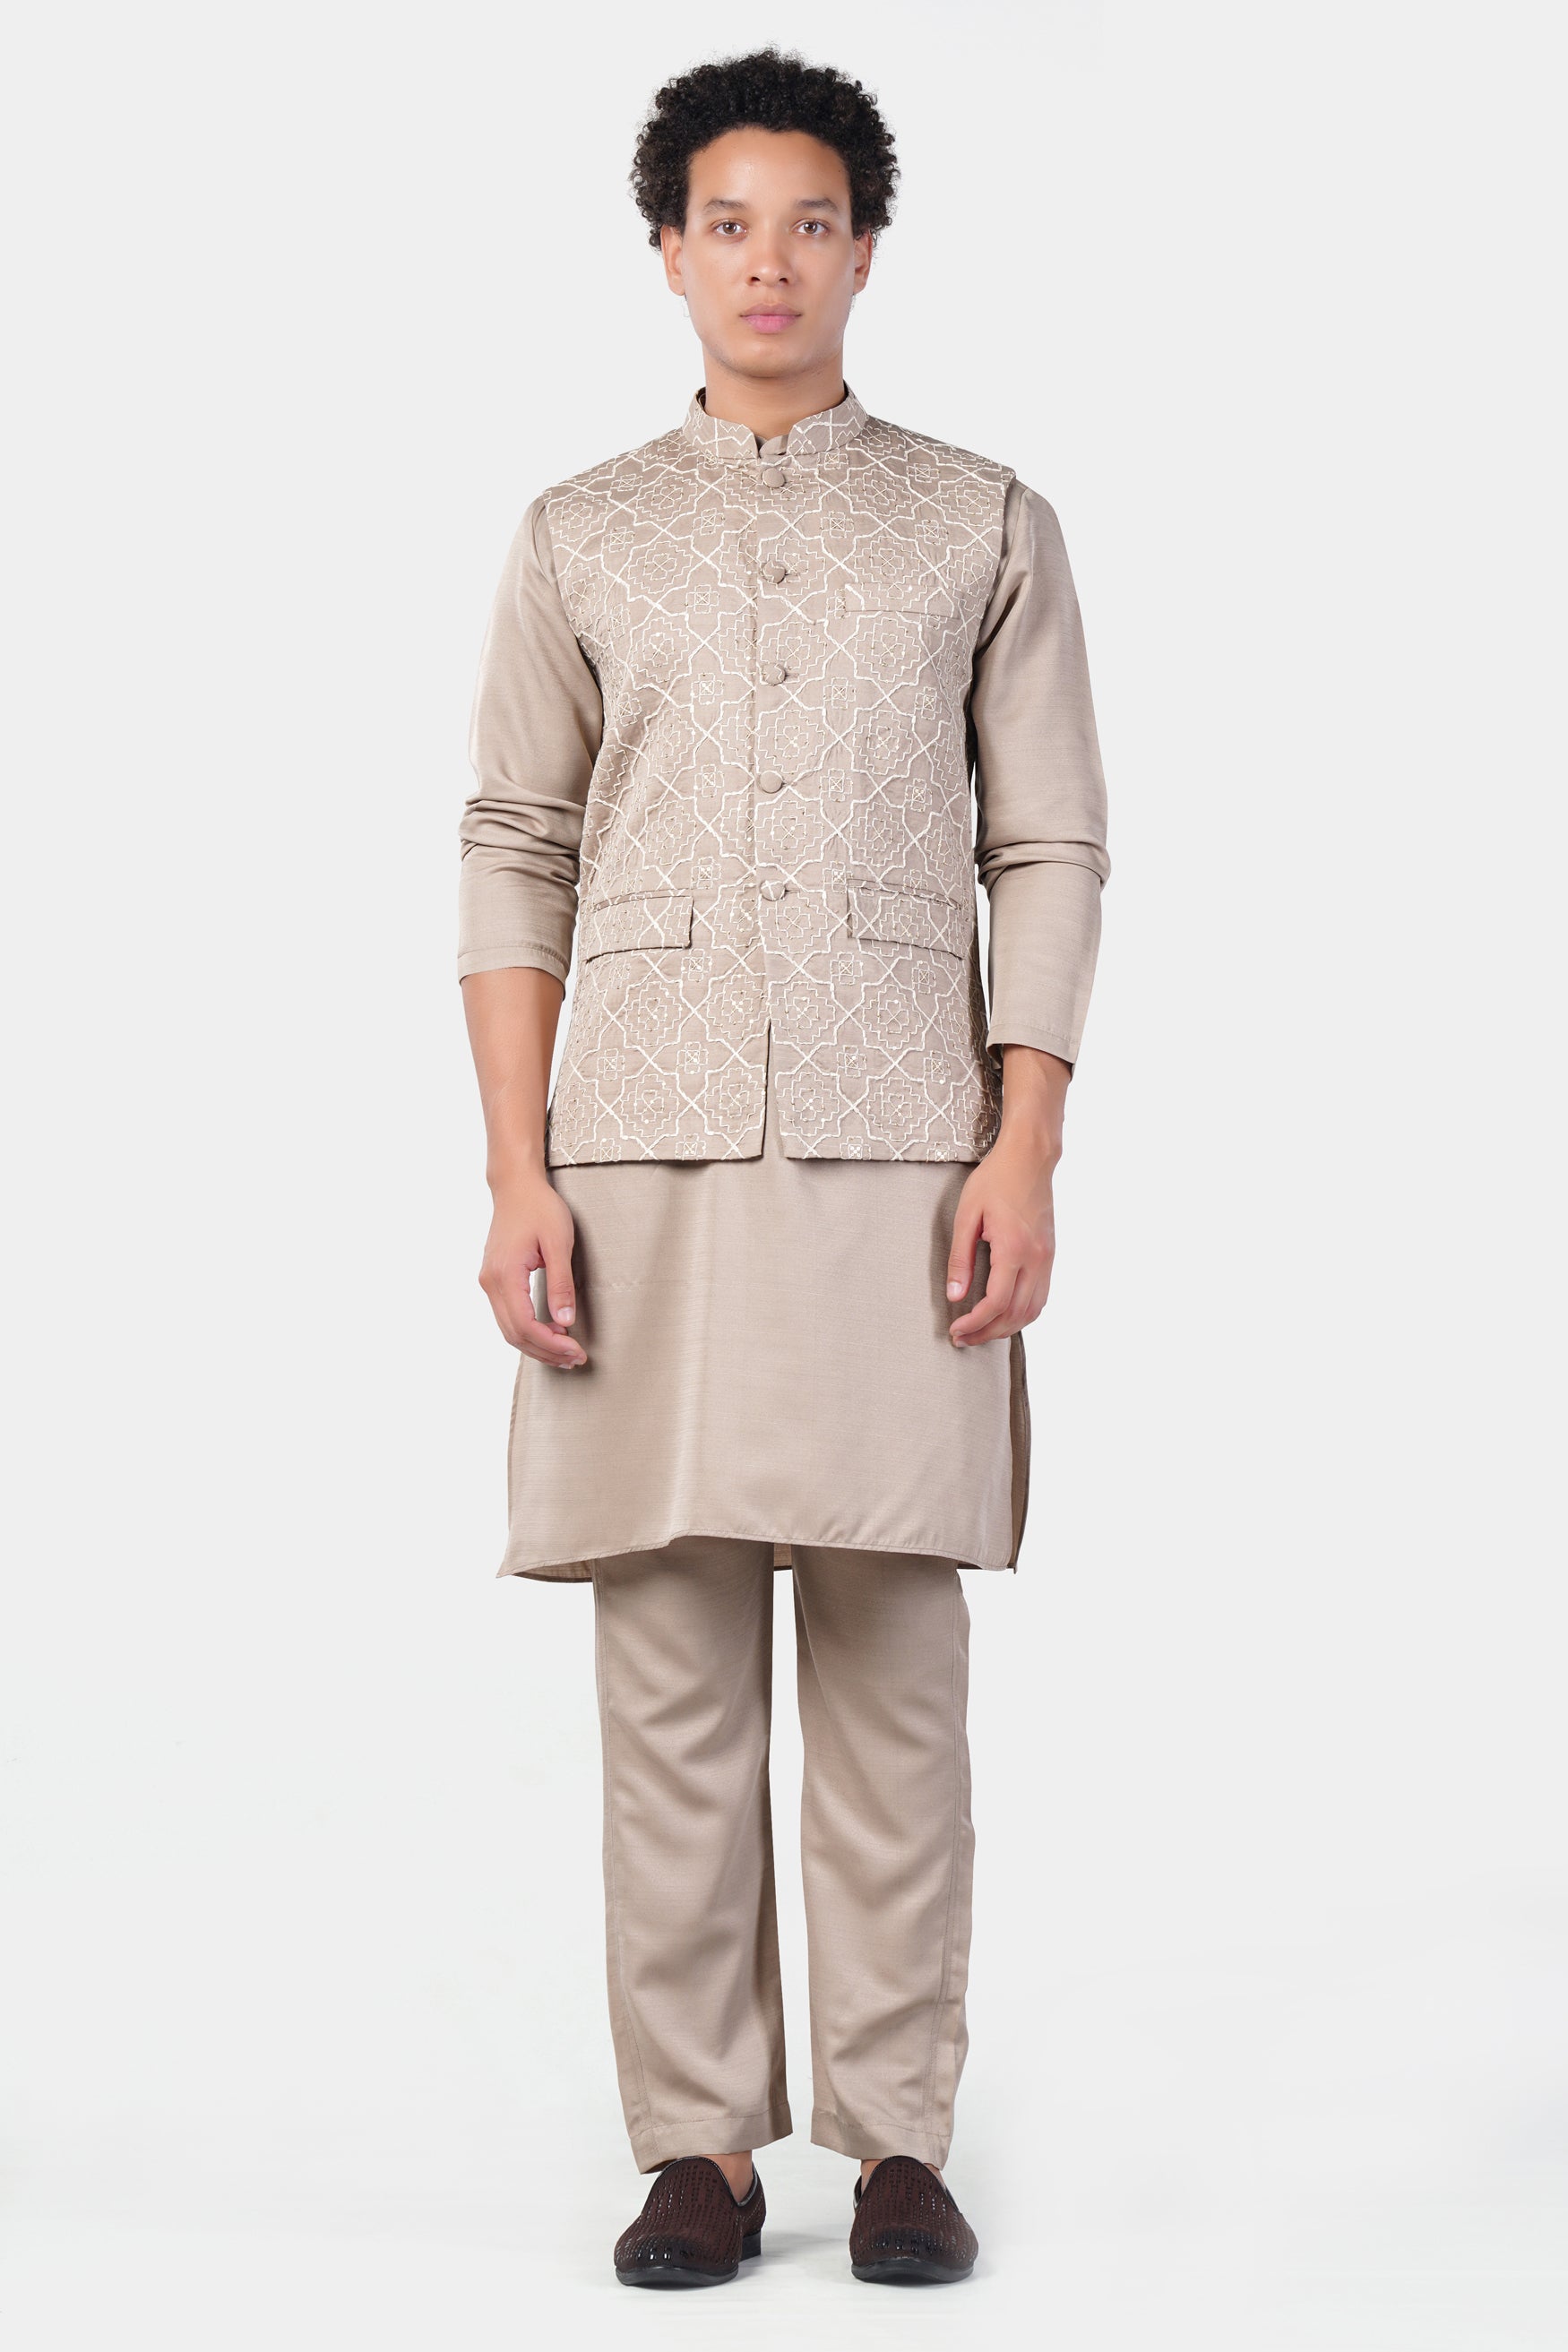 Chalice Brown Subtle Sheen Viscose Kurta Set with Trellis Pattern Thread and Sequin Embroidered Designer Nehru Jacket